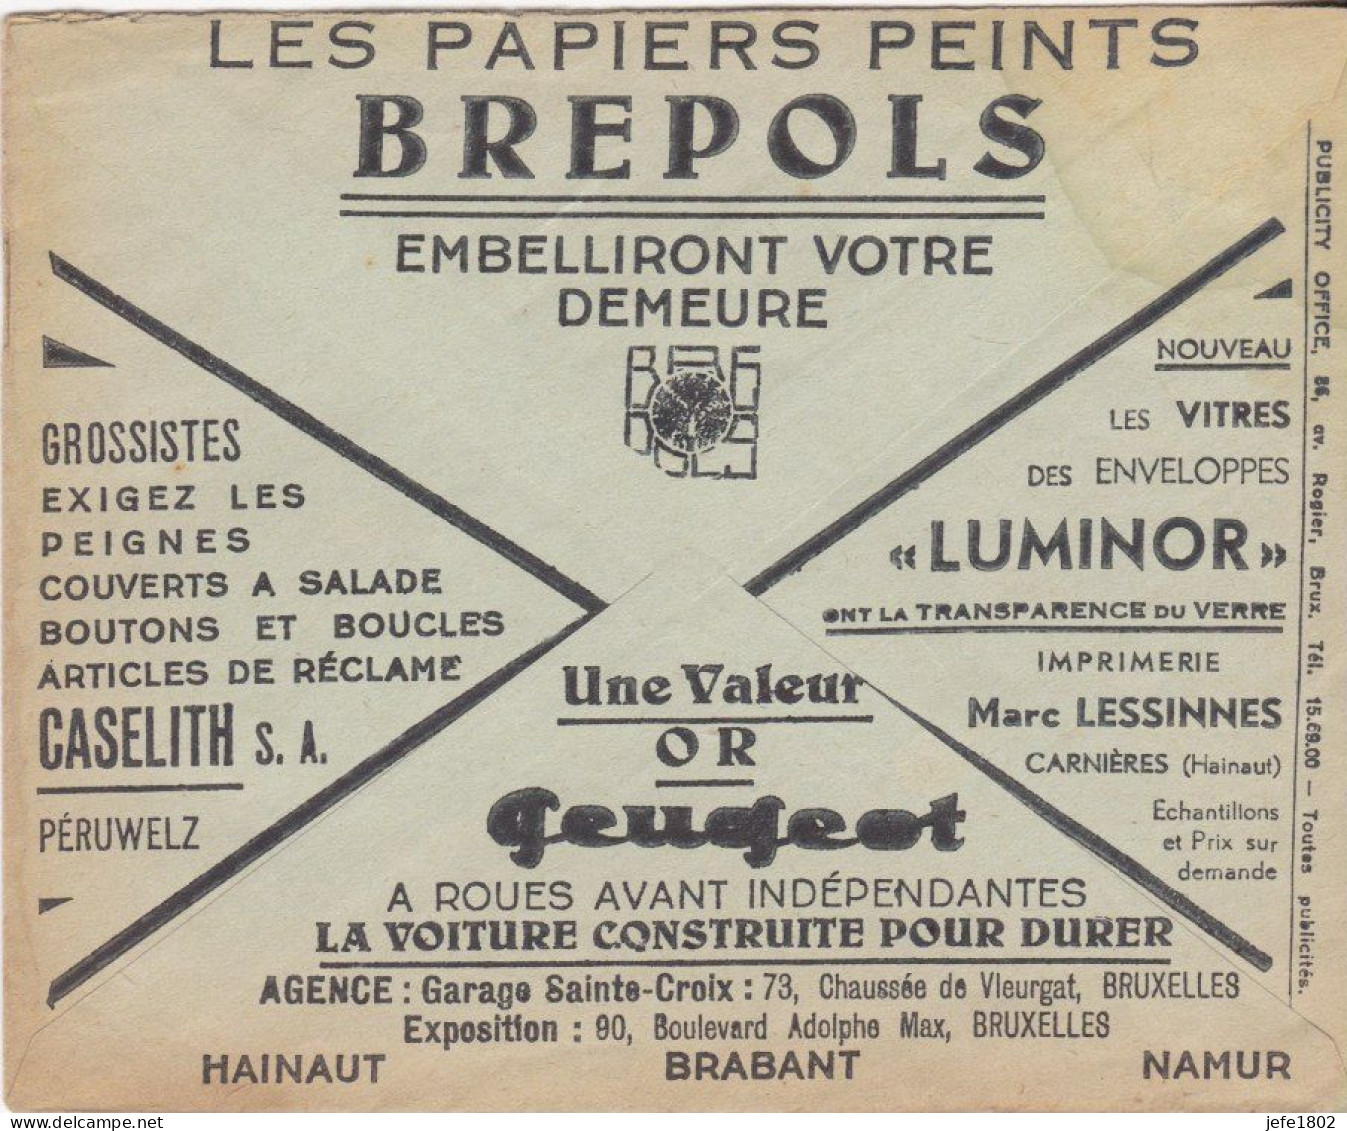 Peugeot à Roues Avant Indépendantes / Brepols / Gaselith / Luminor - Briefkaarten 1934-1951